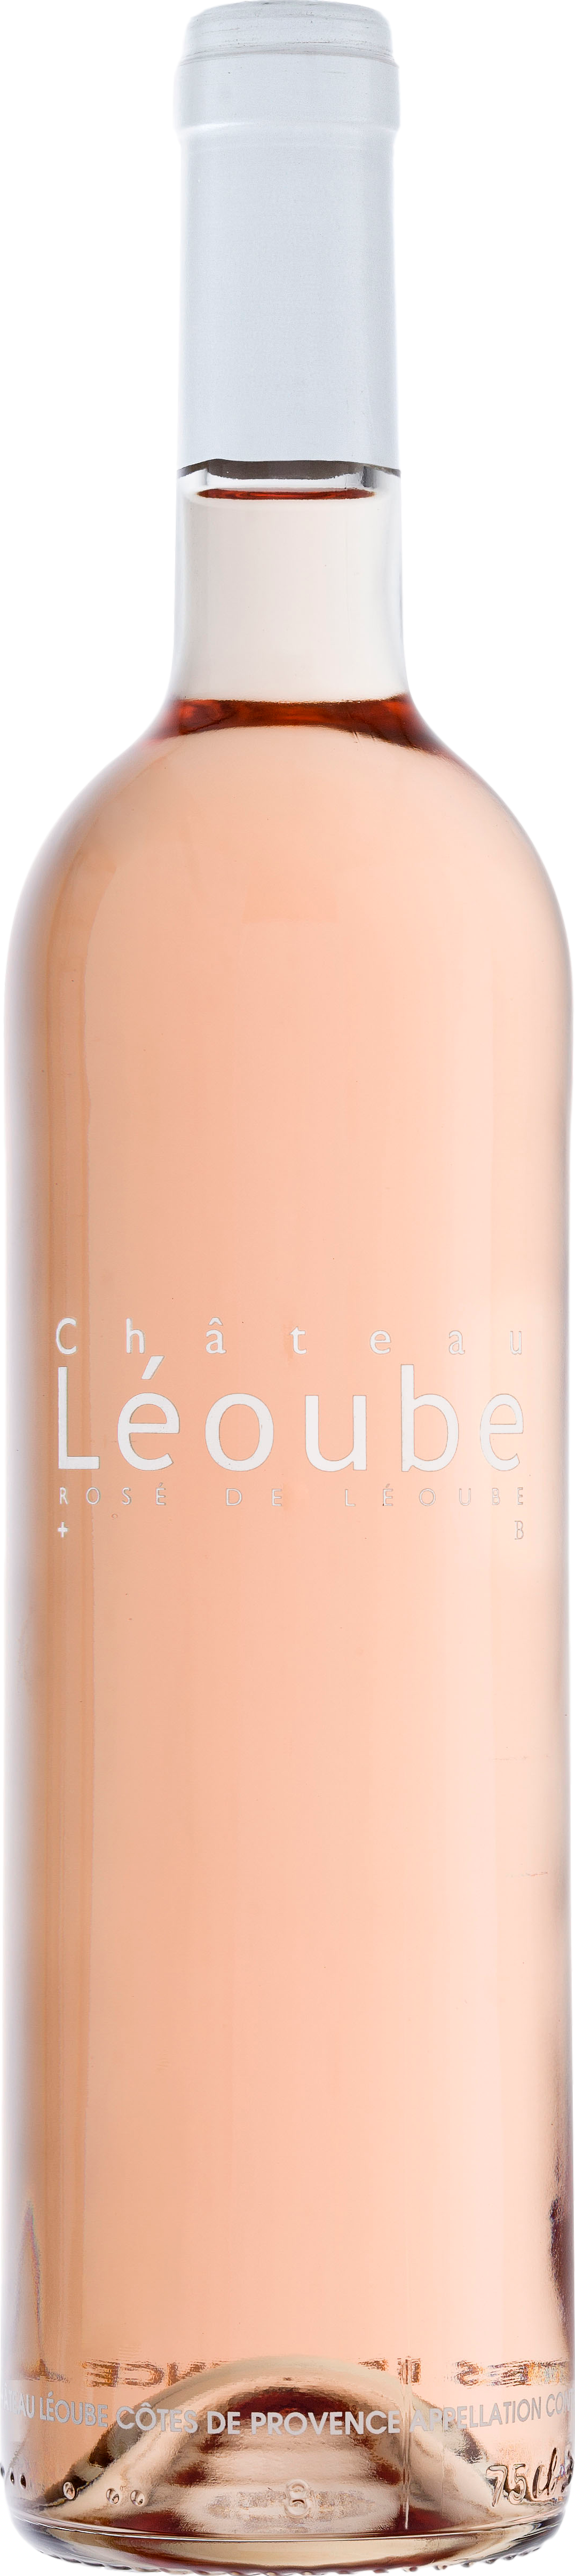 Chateau Leoube Rose de Leoube 2020